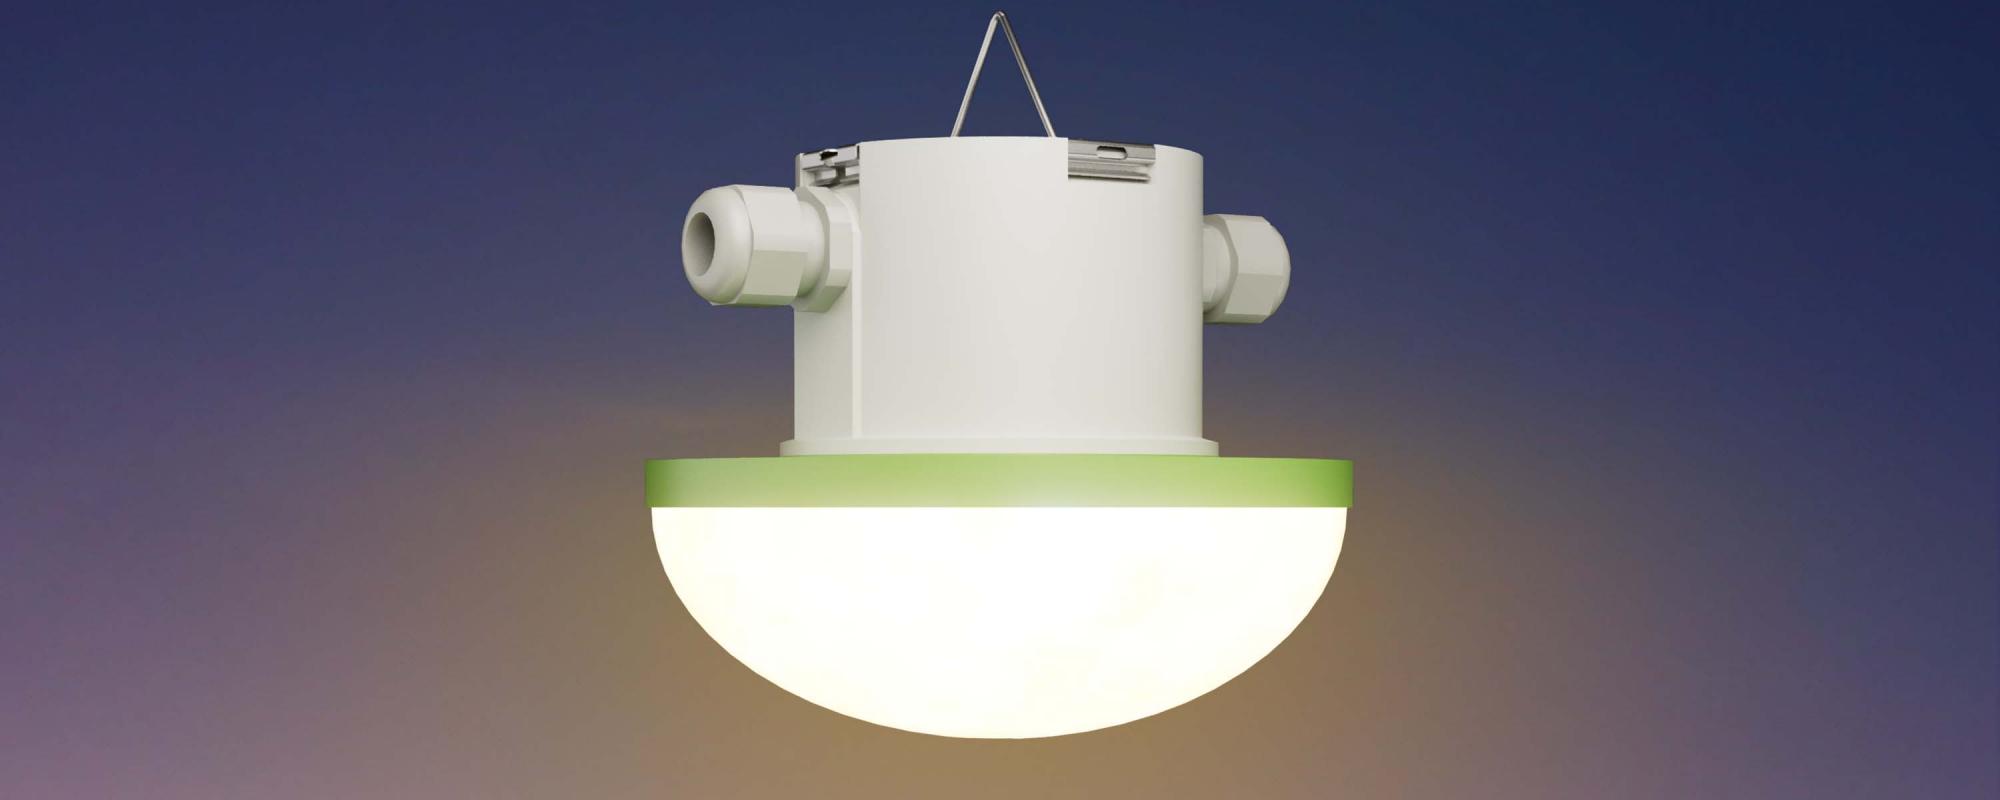 Fancom présente des solutions d'éclairage innovantes